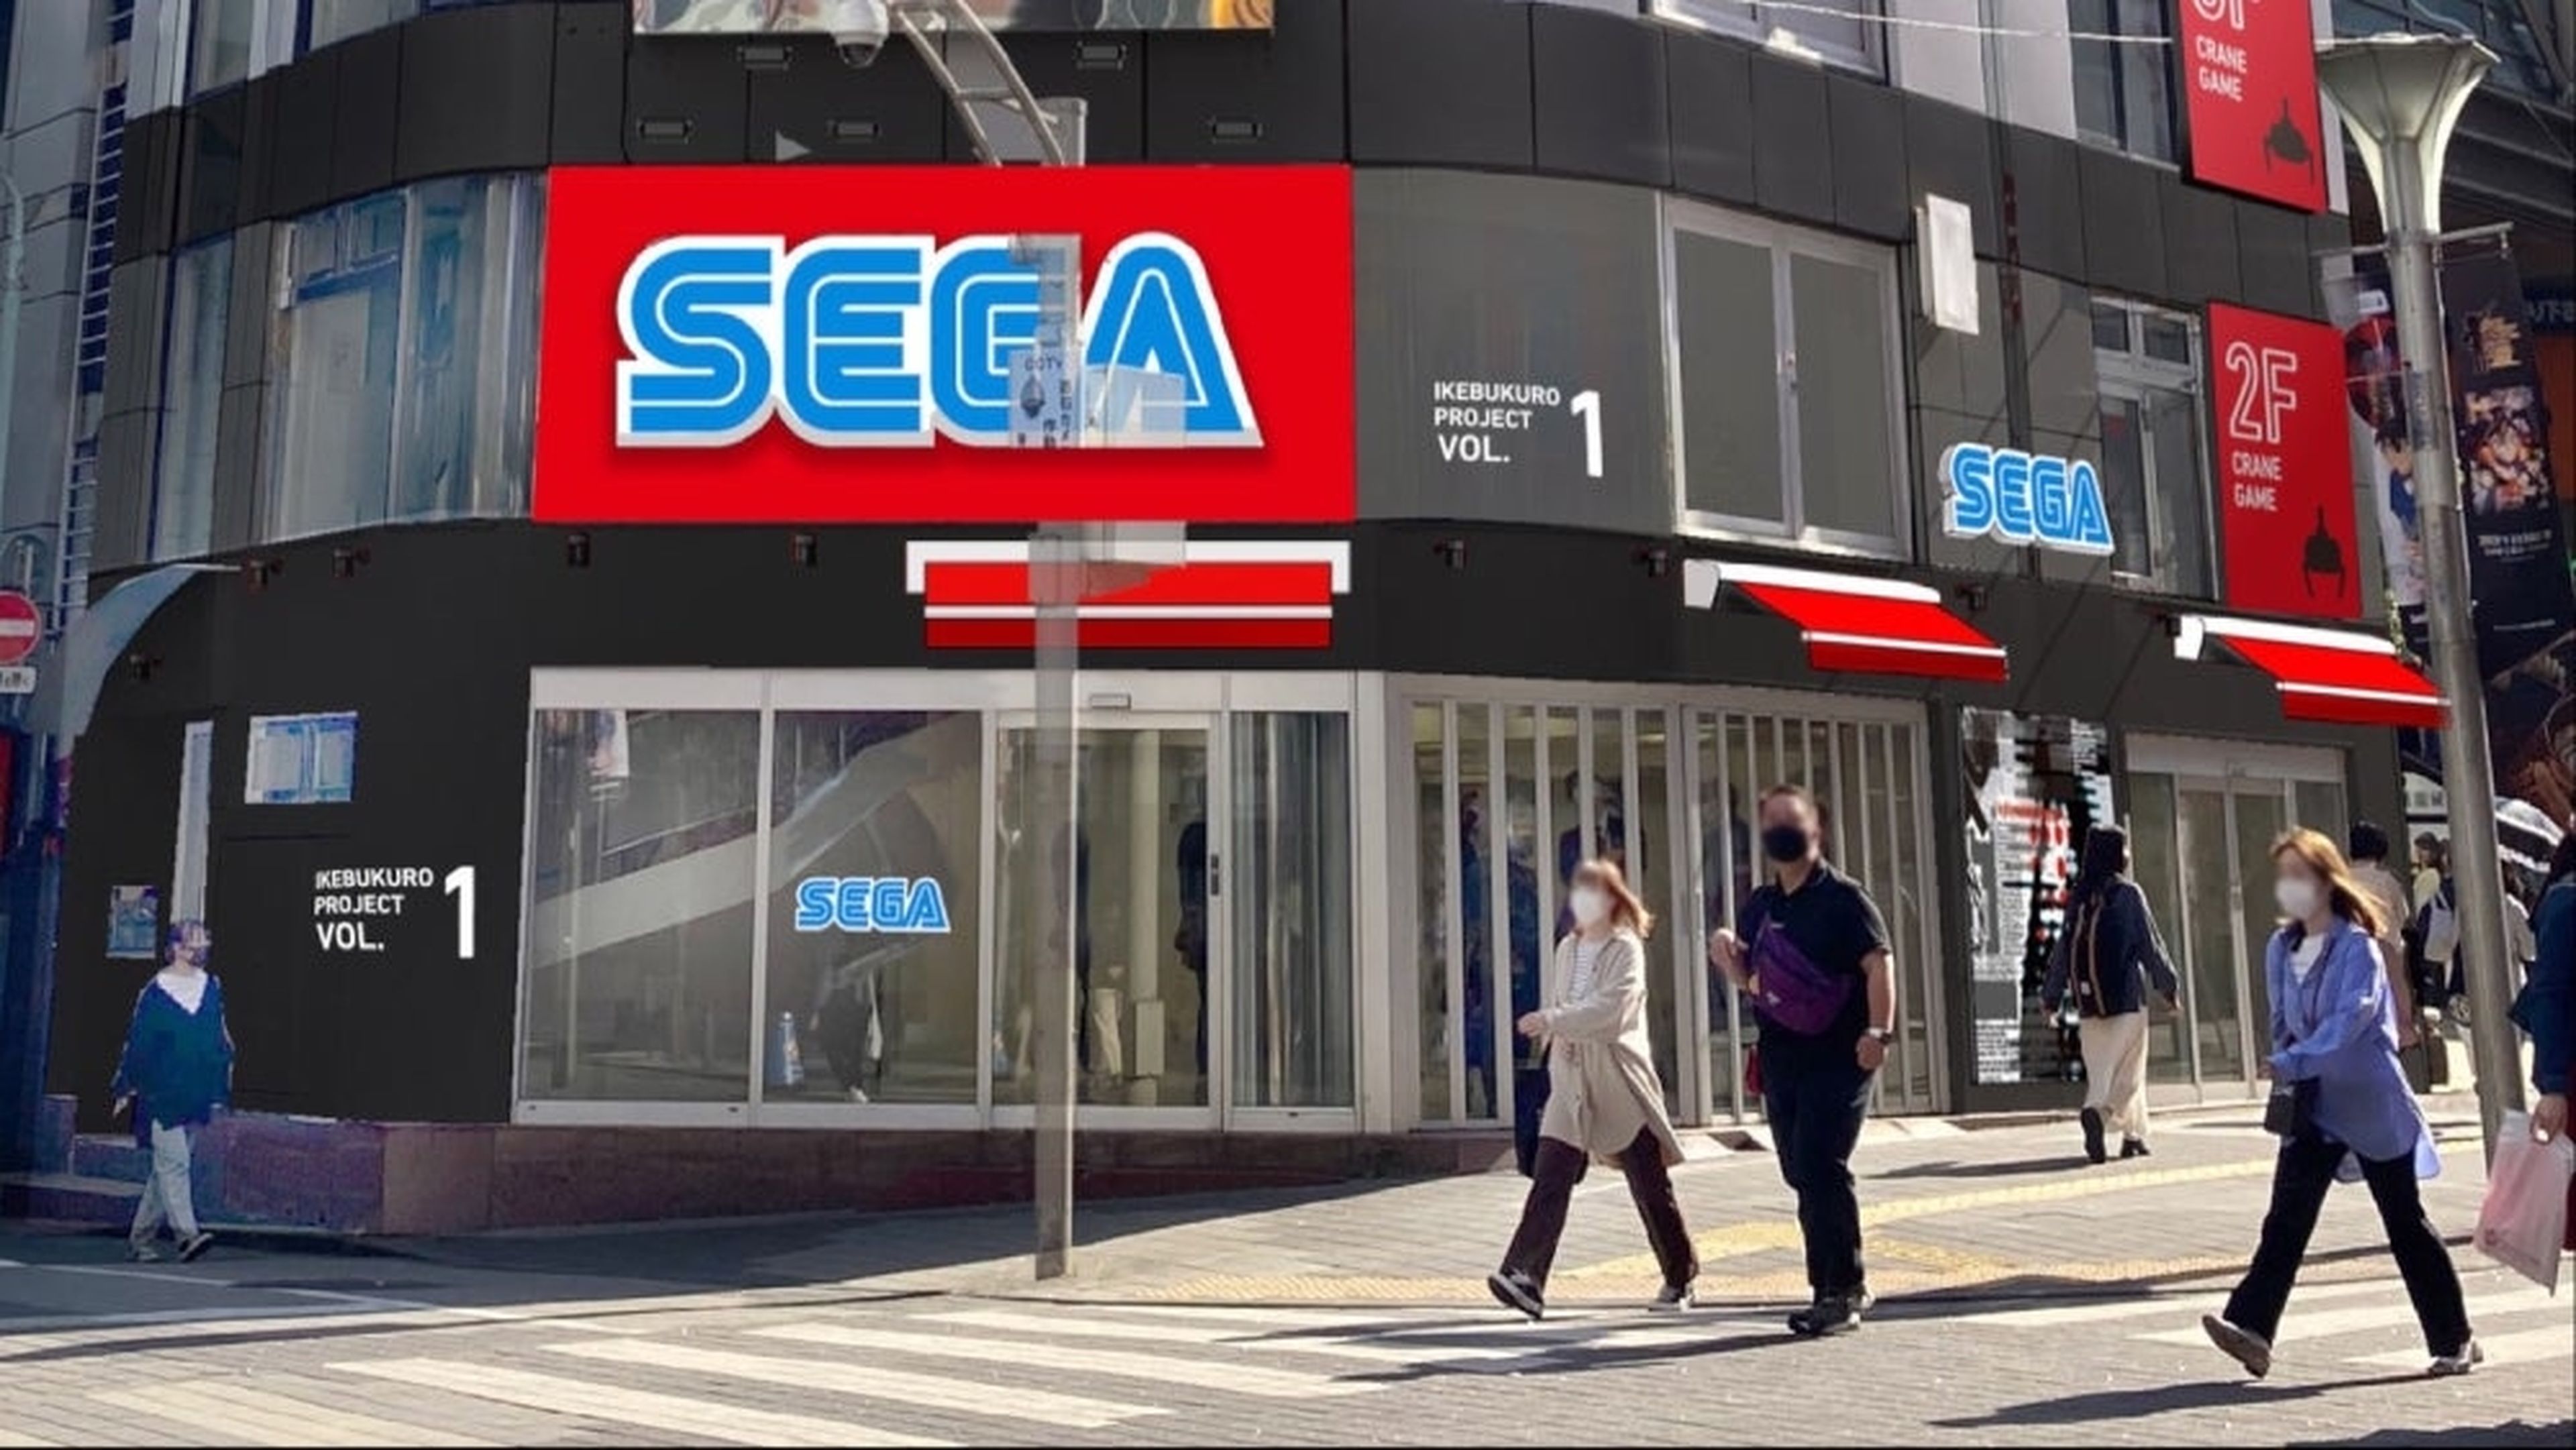 Los salones recreativos se resisten a morir: un nuevo SEGA Arcade abrirá en Tokio, un mes después de cerrar